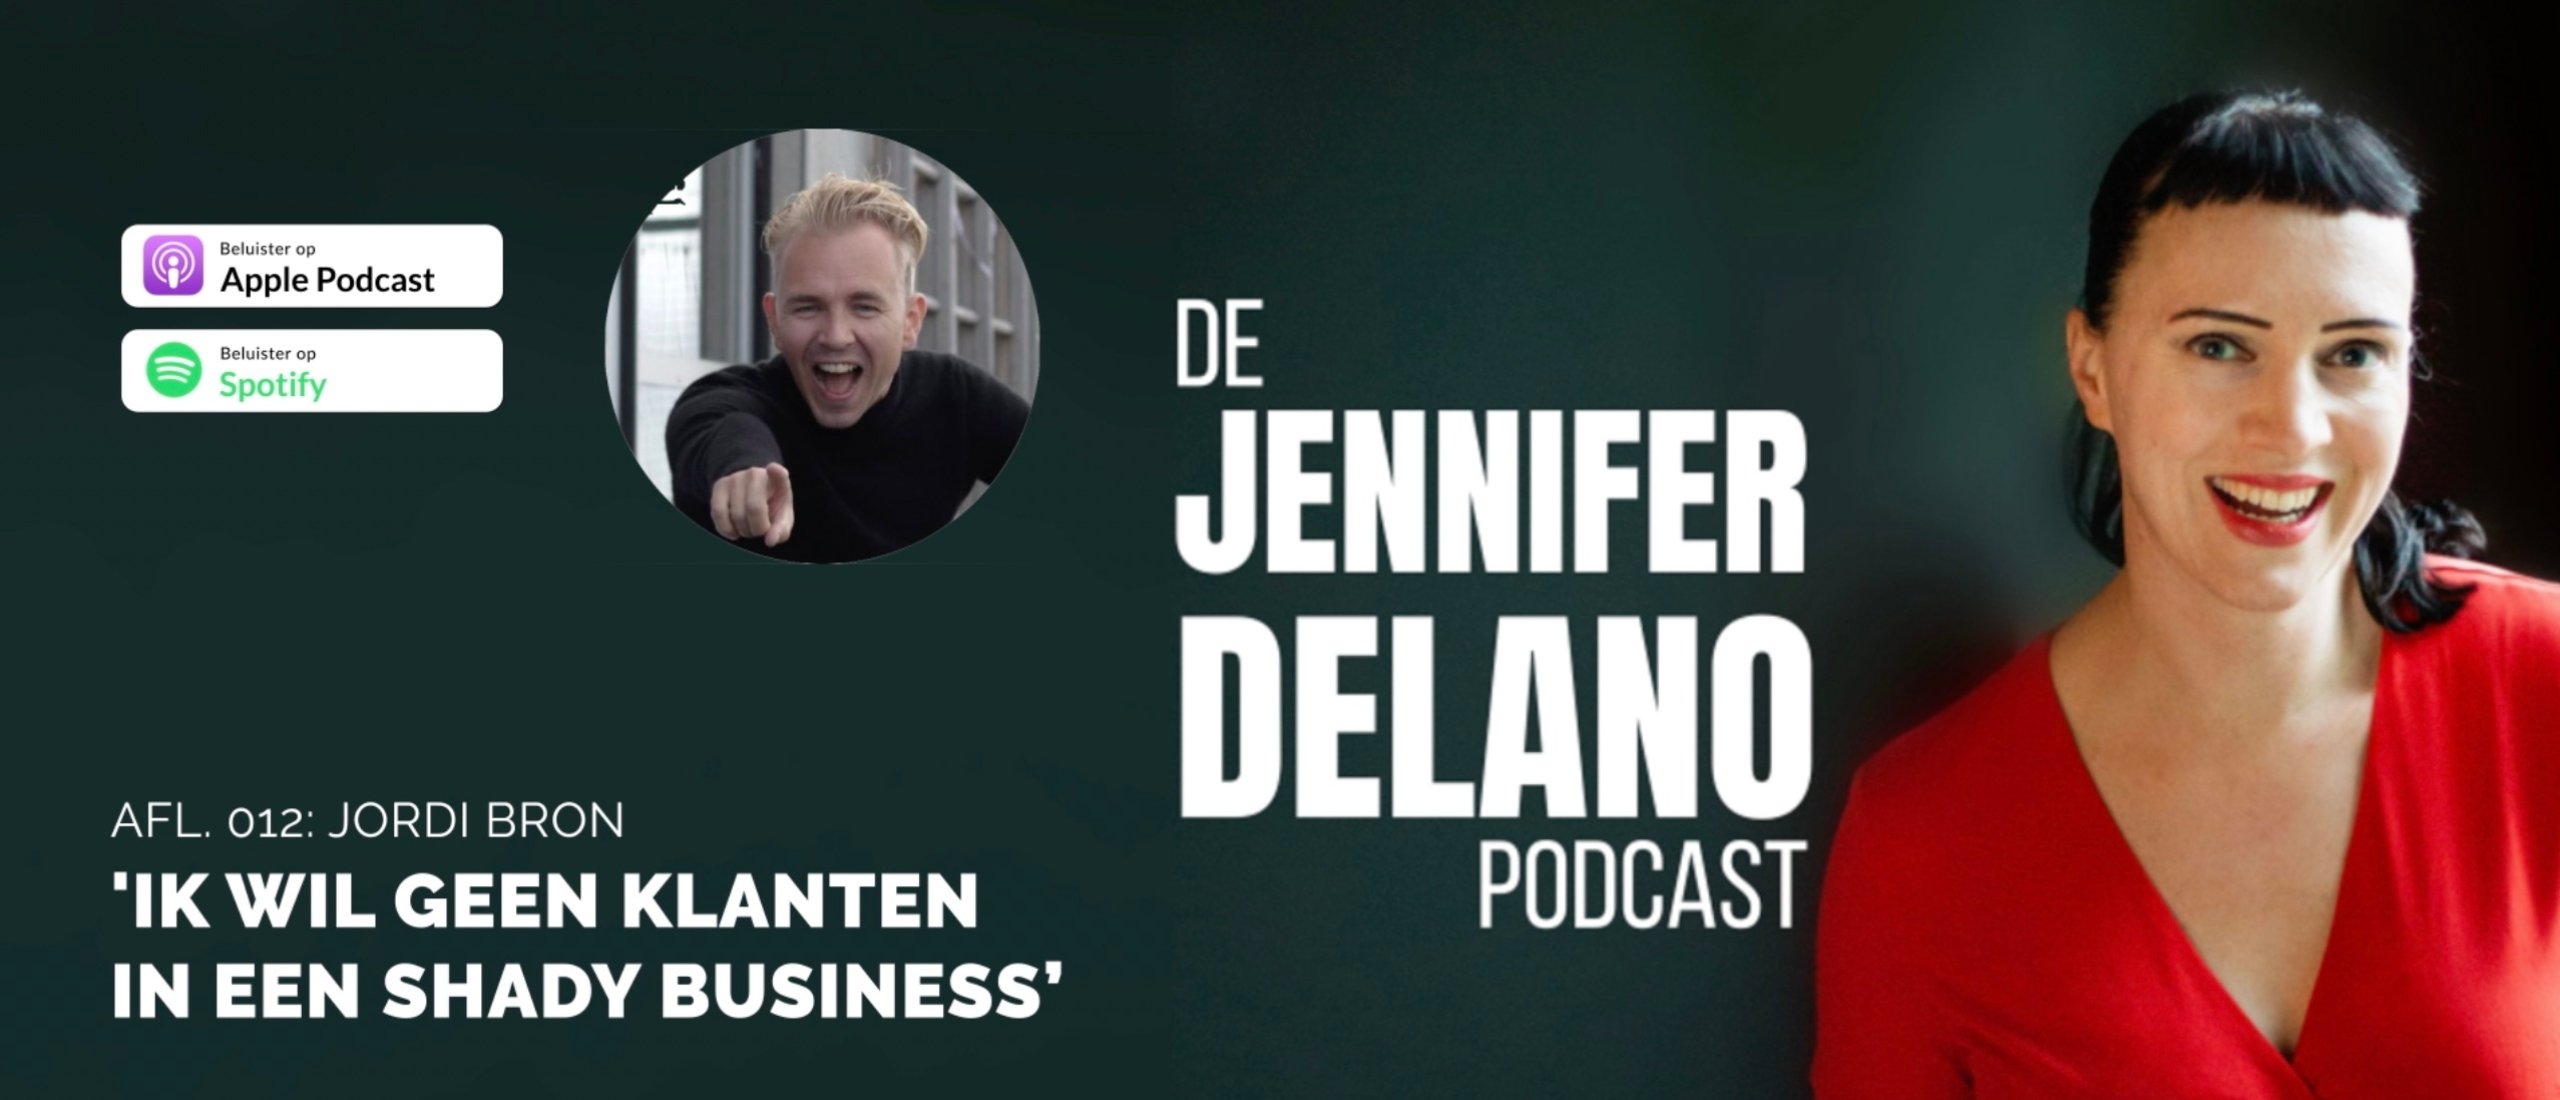 'Ik wil geen klanten die in een shady business zitten' - De Jennifer Delano Podcast Afl. 012 met Jordi Bron